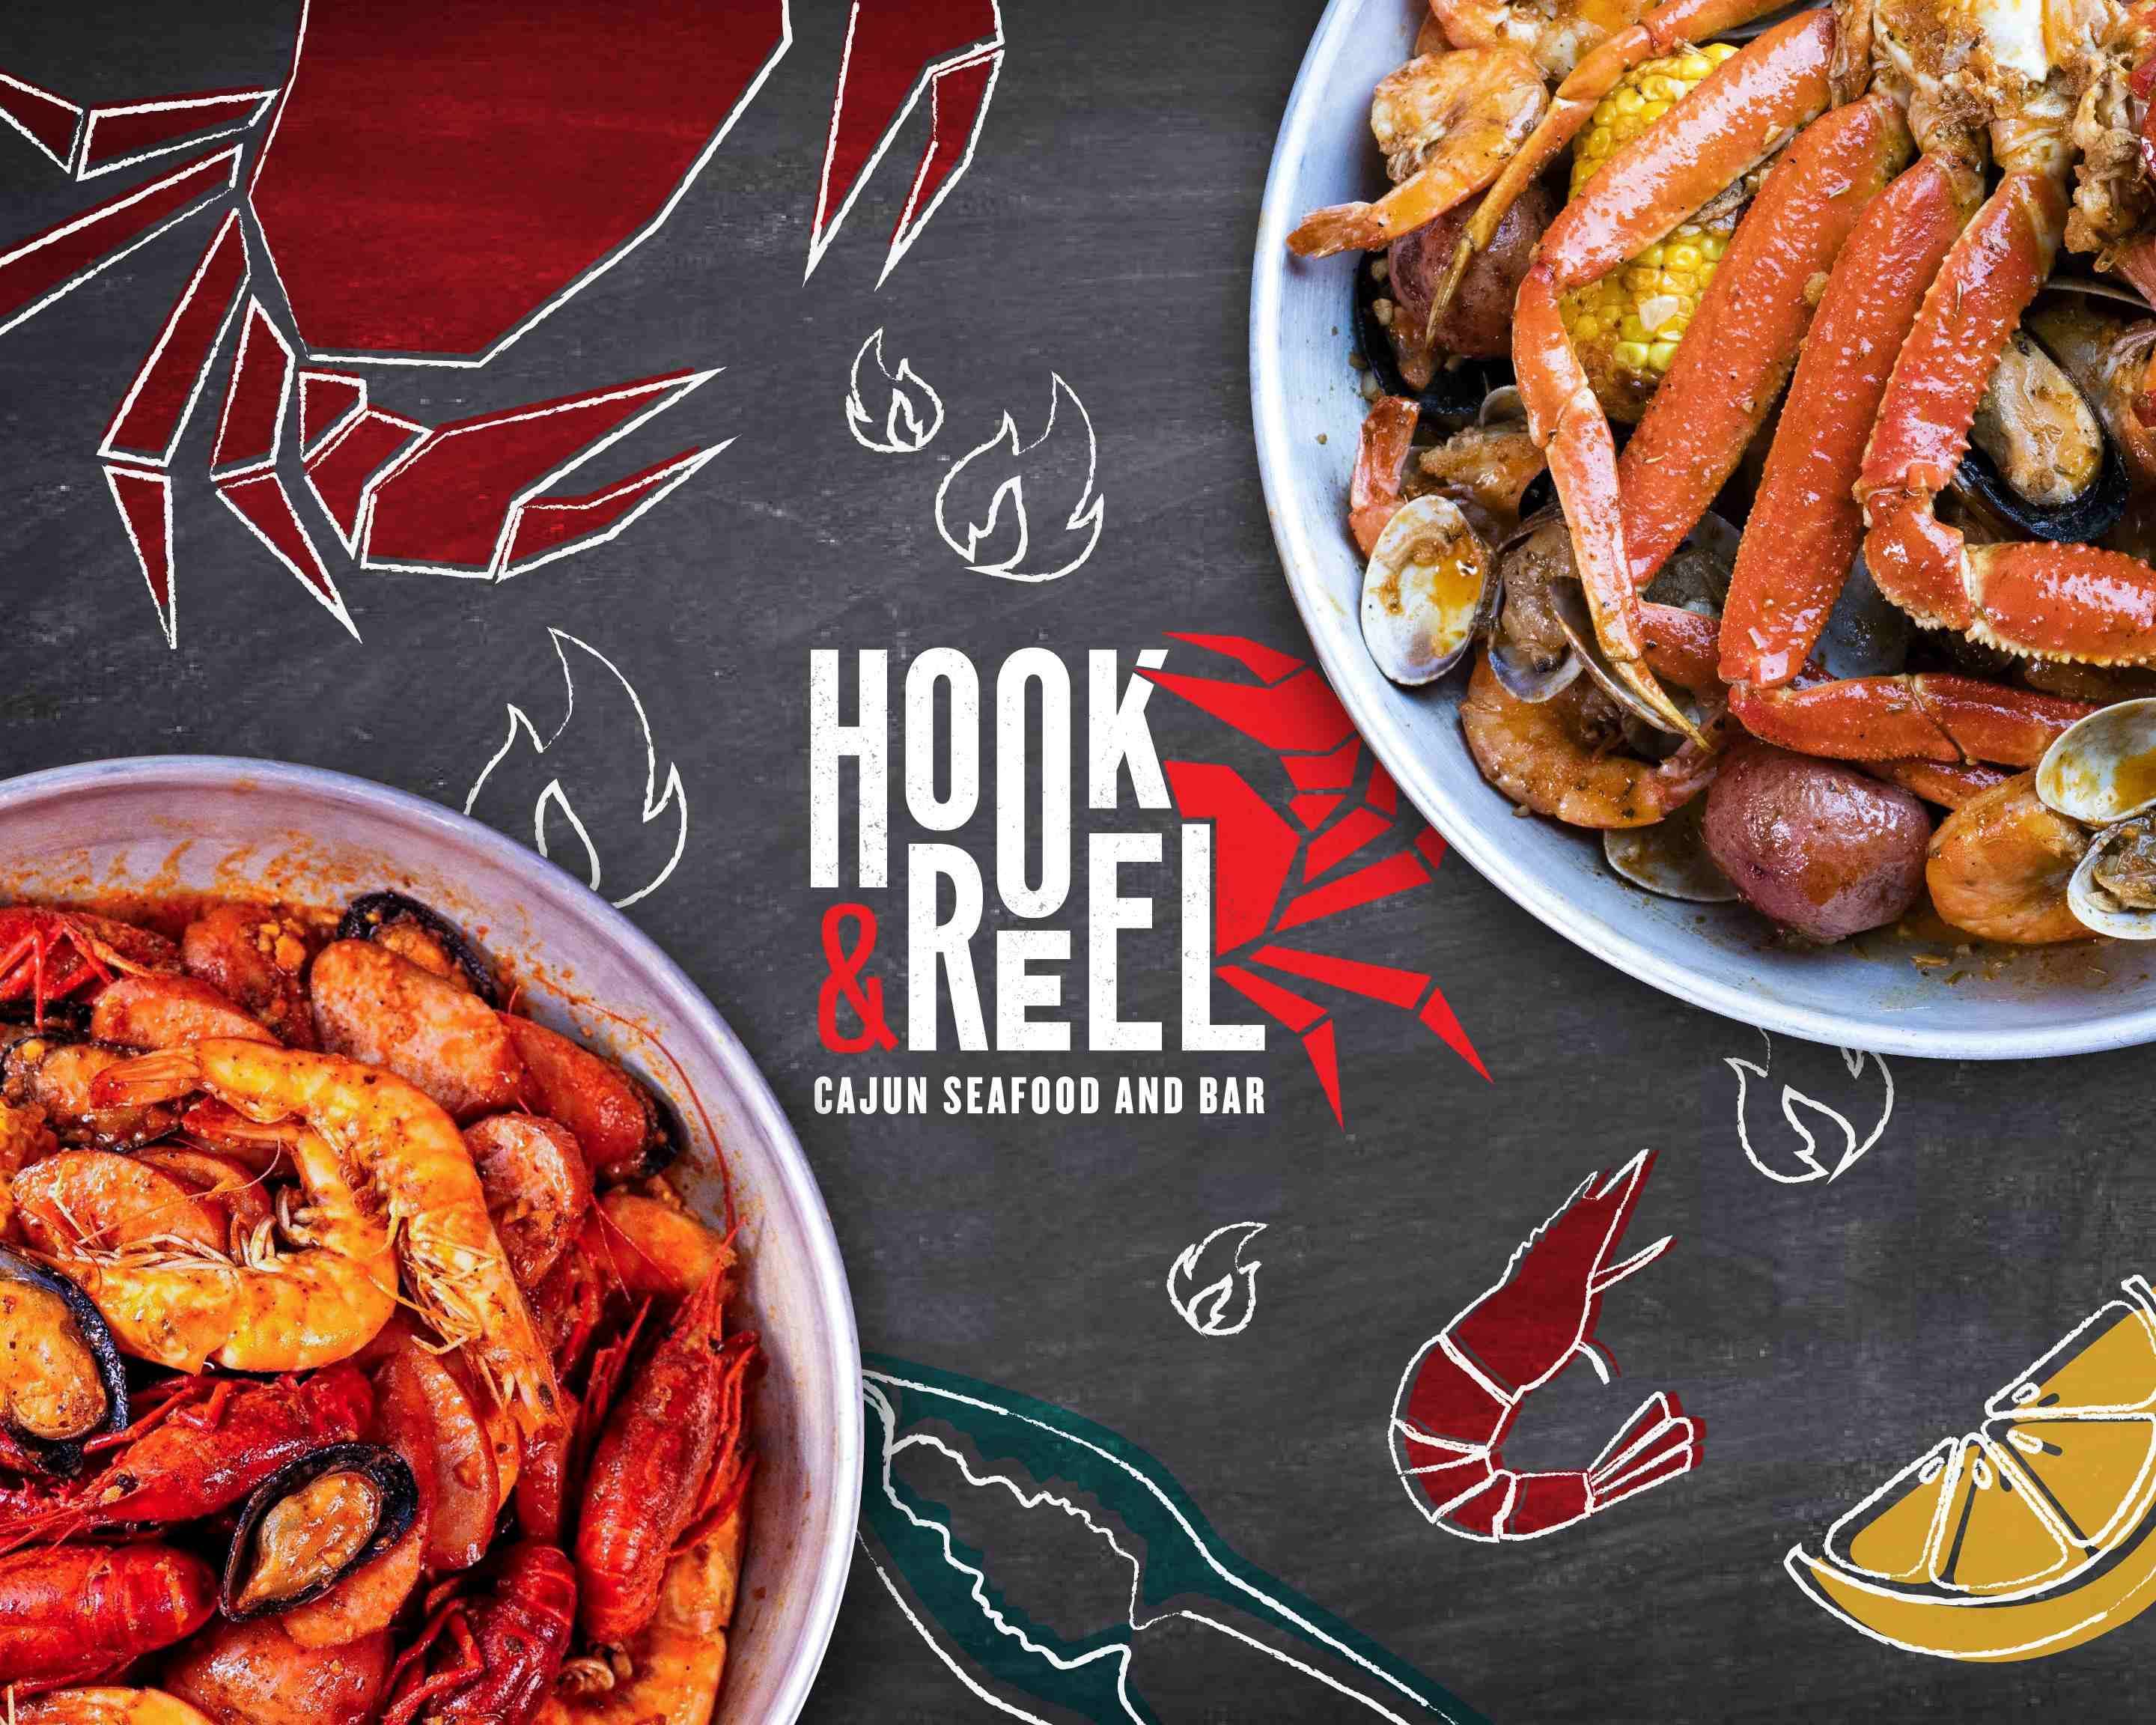 HOOK & REEL CAJUN SEAFOOD & BAR, Meridian - Photos & Restaurant